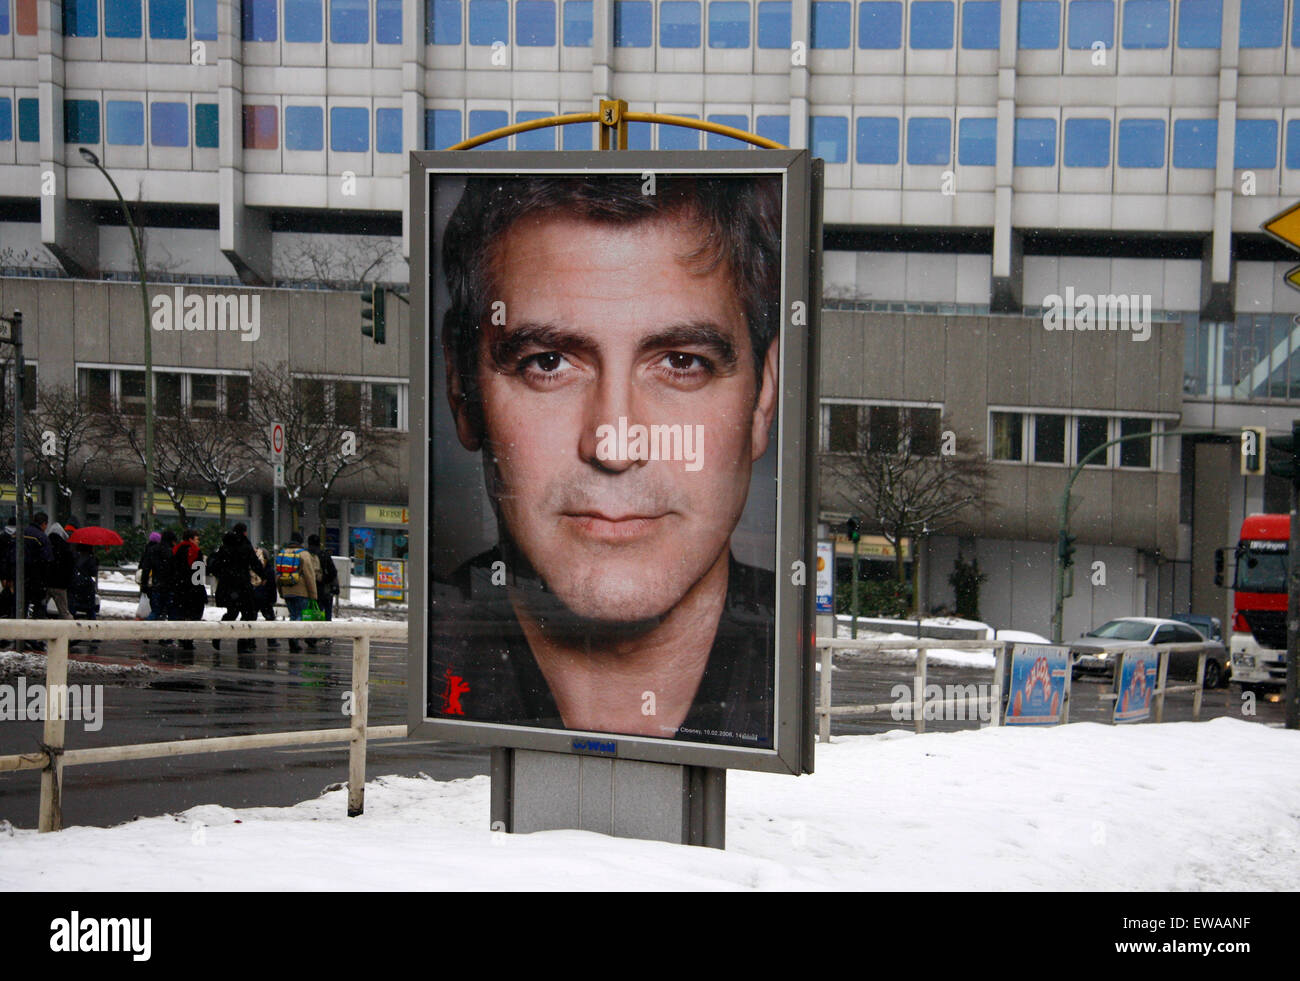 George Clooney - Schauspieler-Portraits Im Schnee: Berlinale 2010 - Impressionen, 12. Februar 2010, Berlin. Stockfoto